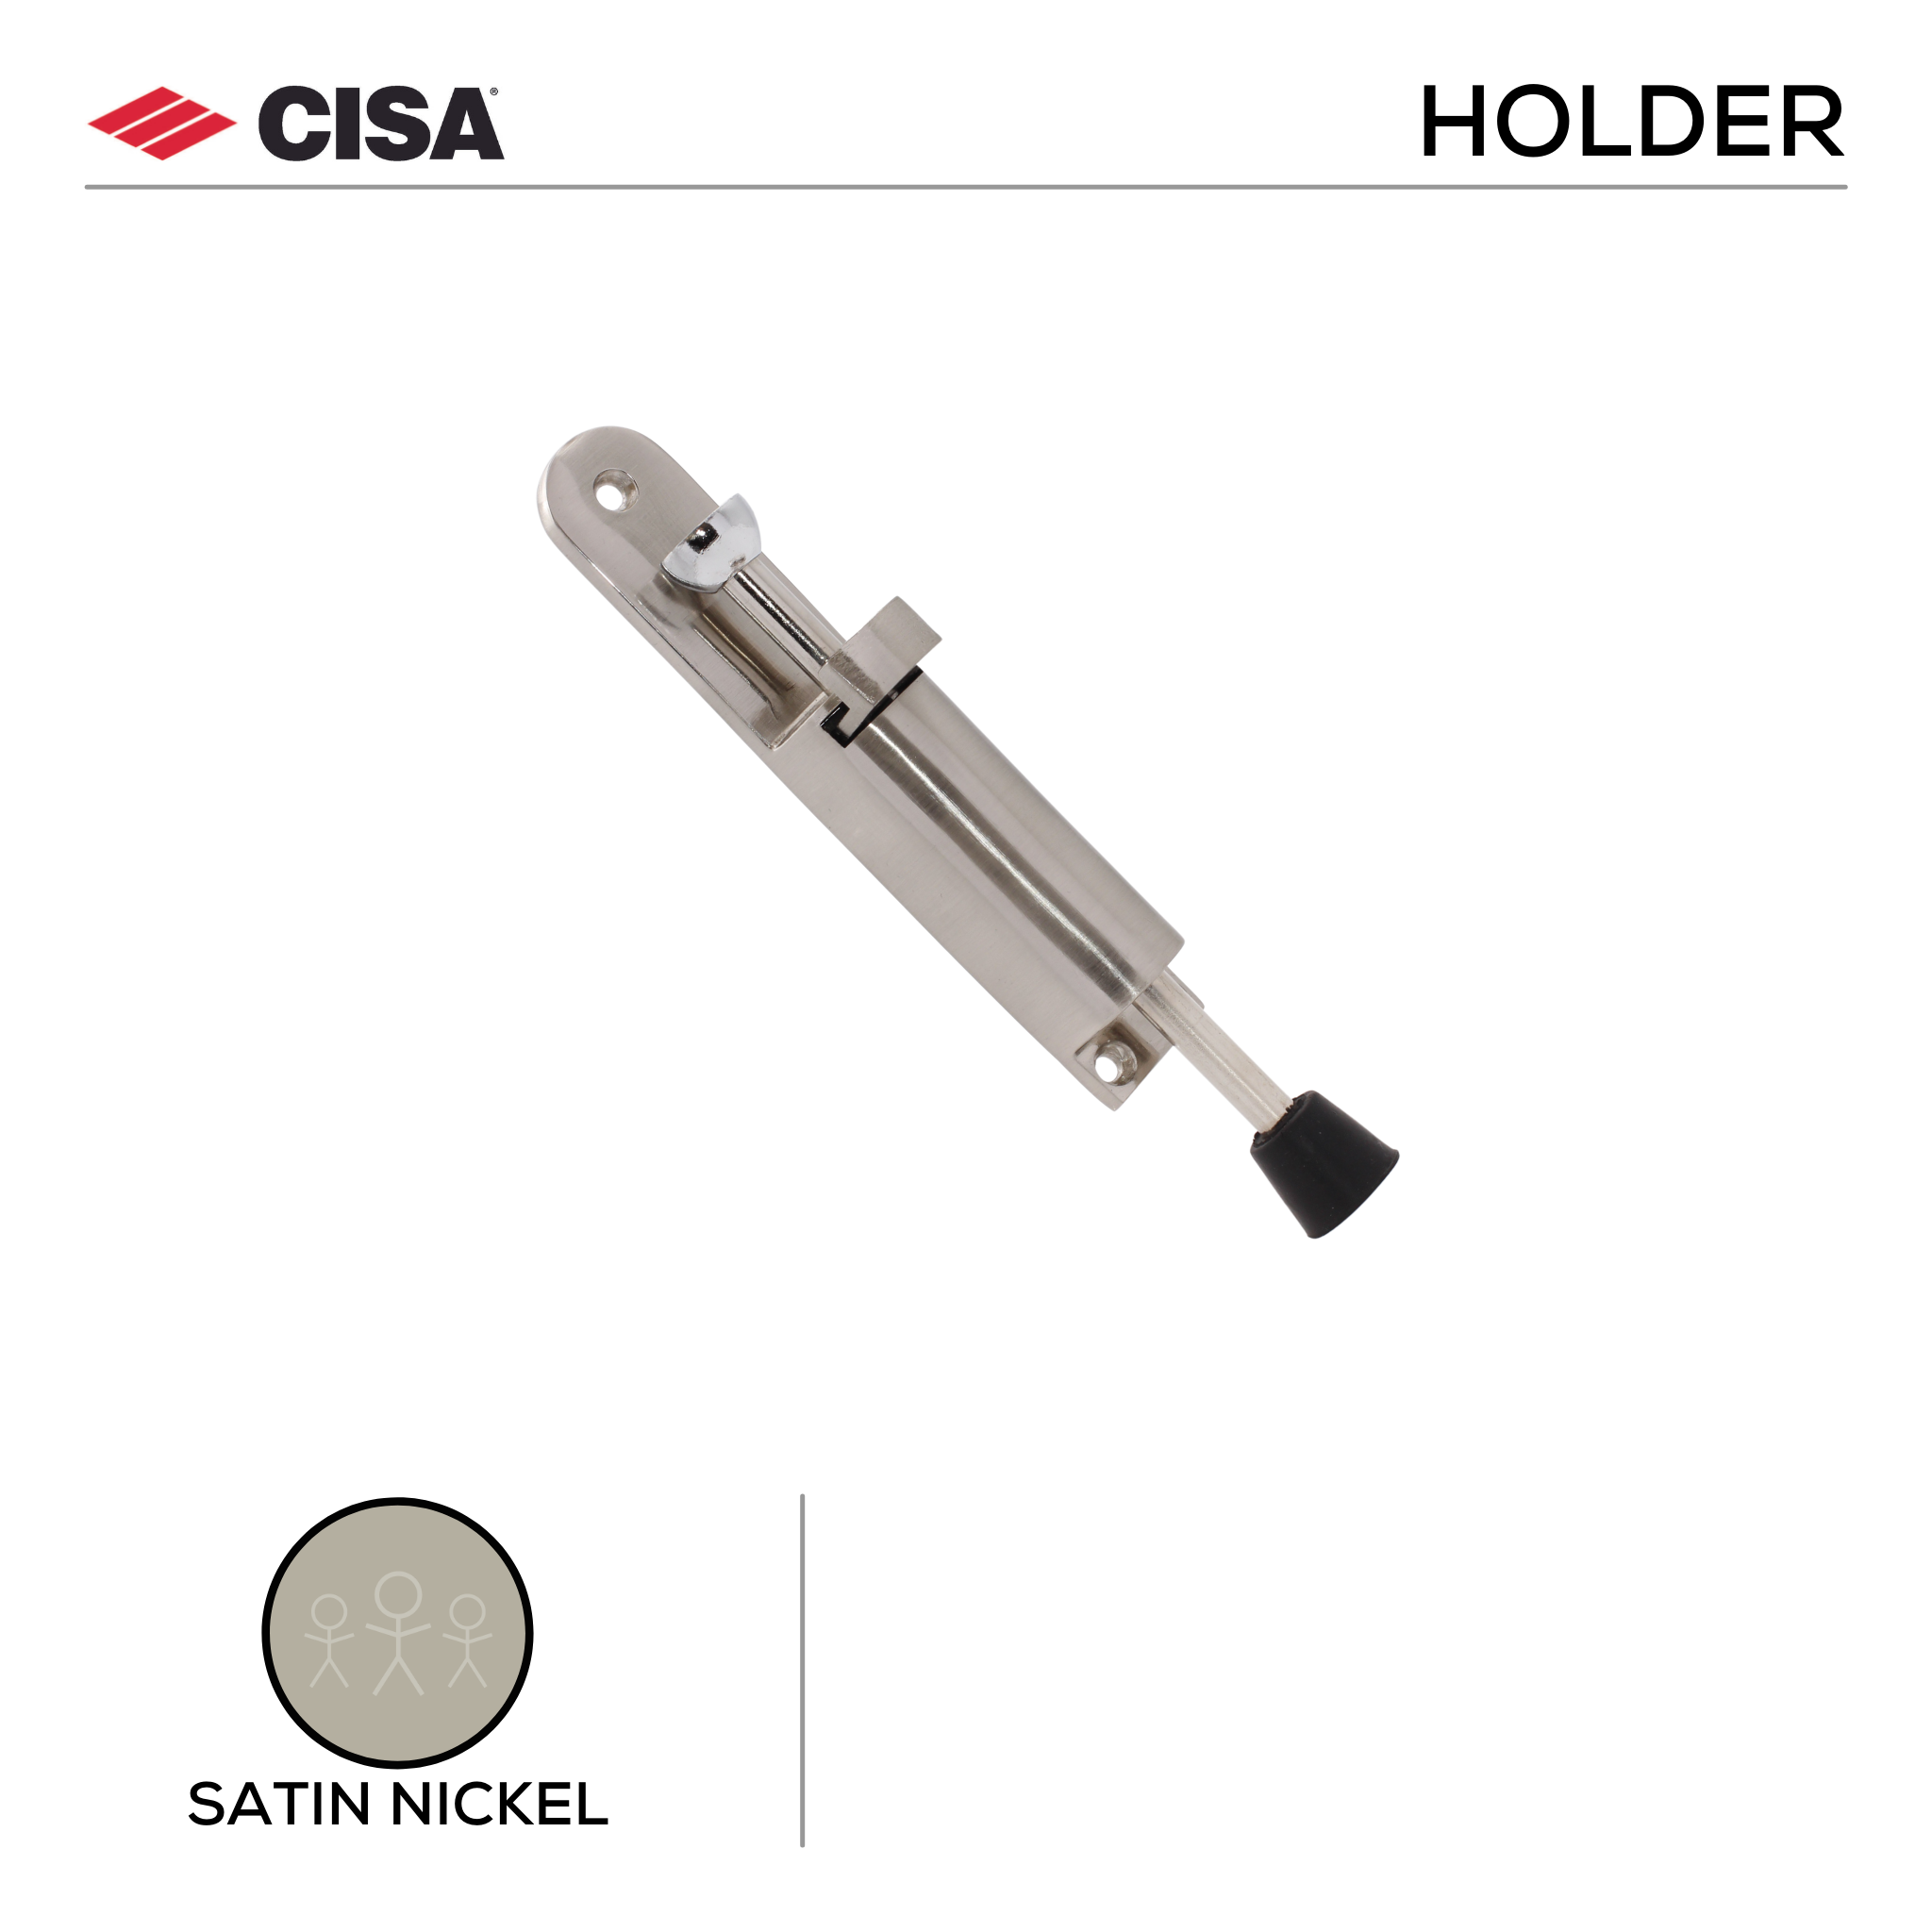 FDH02.SN, Door Holder, 160mm (l) x 28mm (Ø), Satin Nickel, CISA